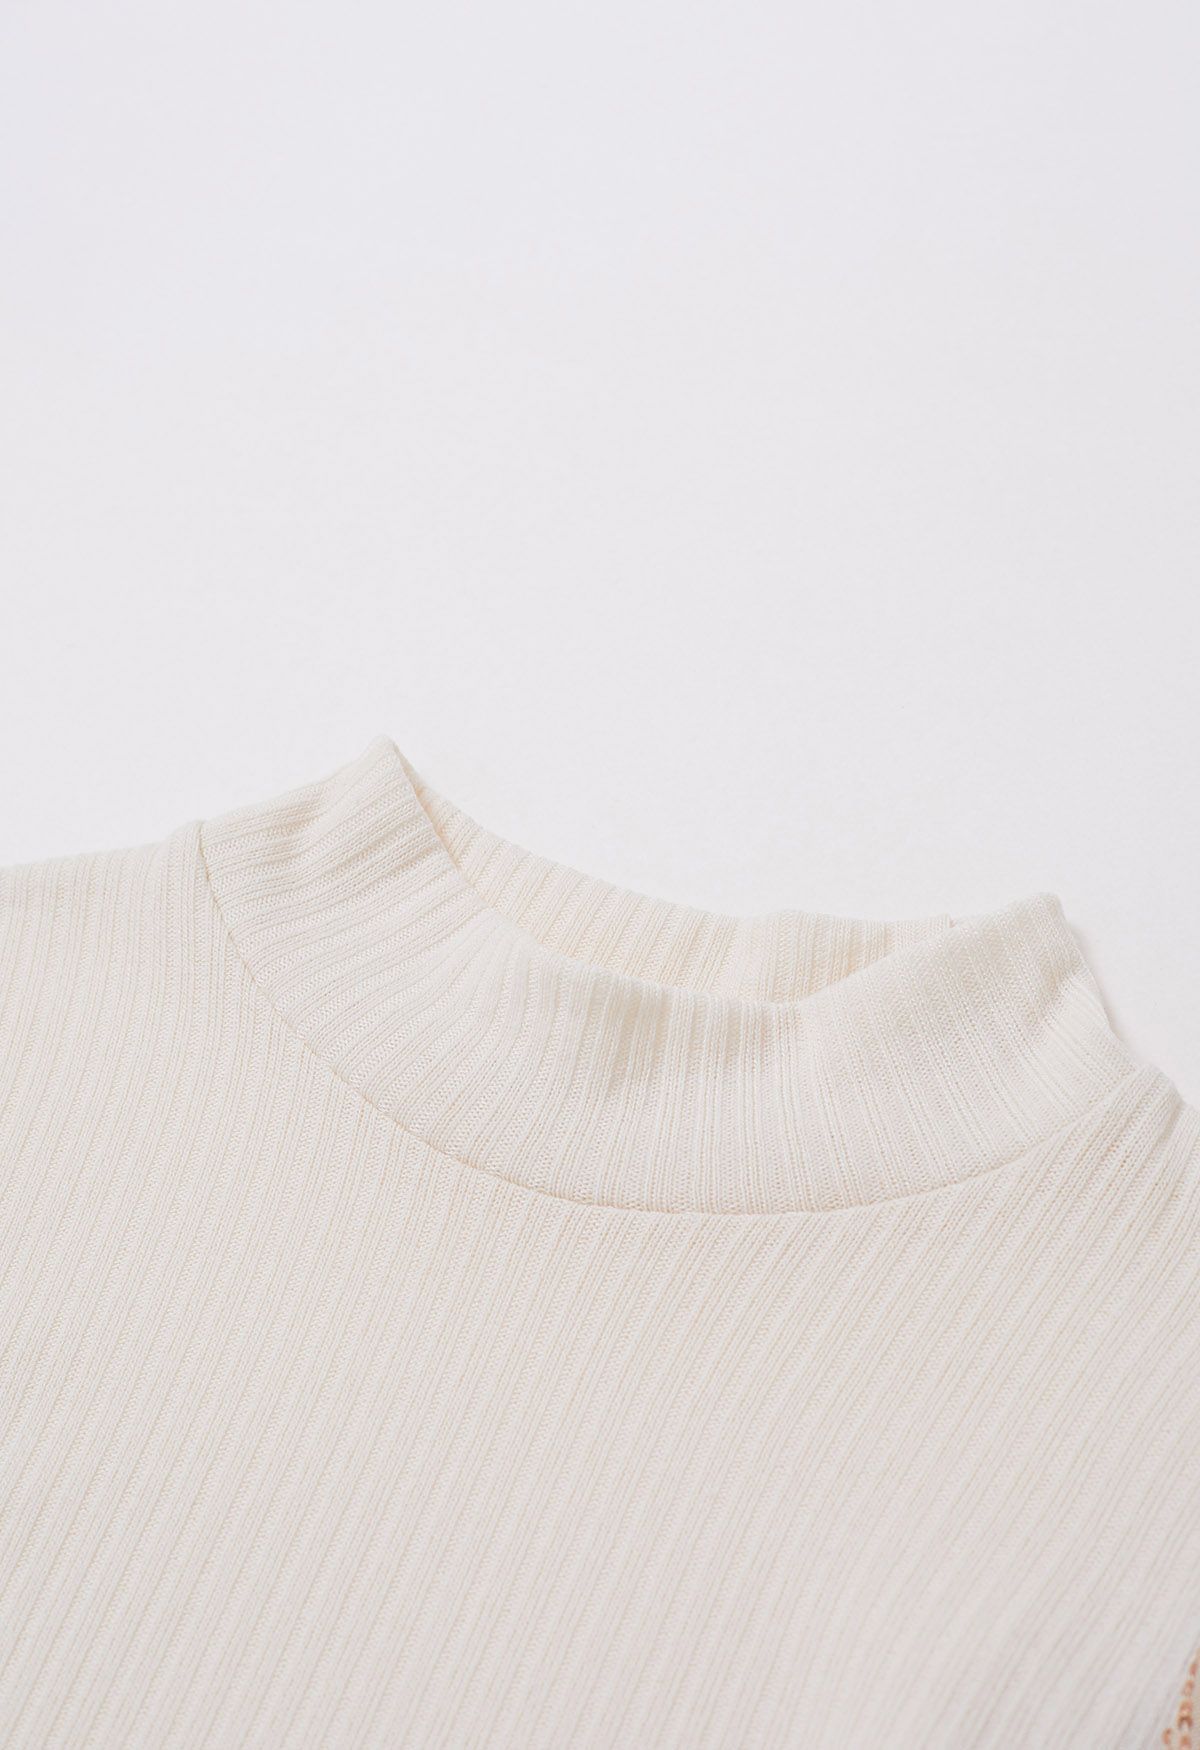 Sequin Mesh Sleeves Mock Neck Knit Top in Cream